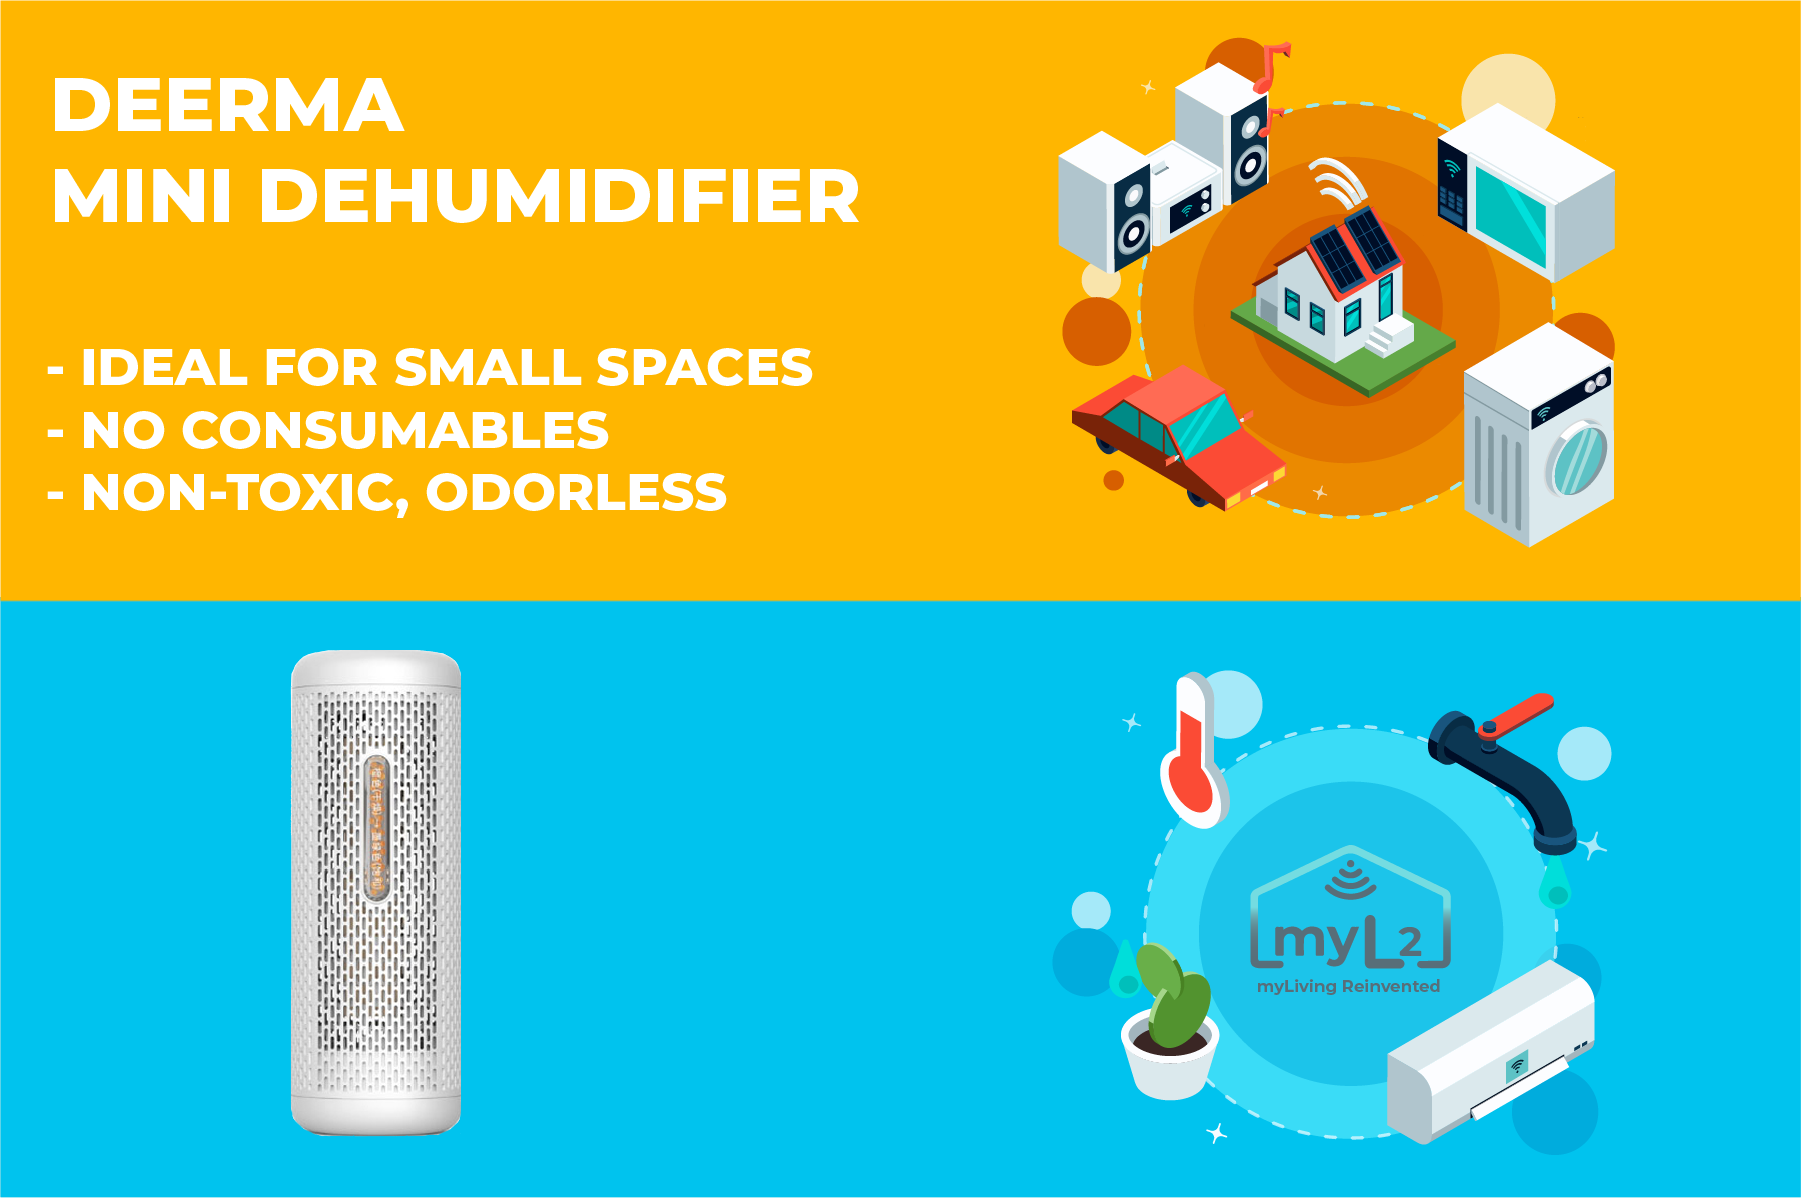 Deerma Mini Dehumidifier